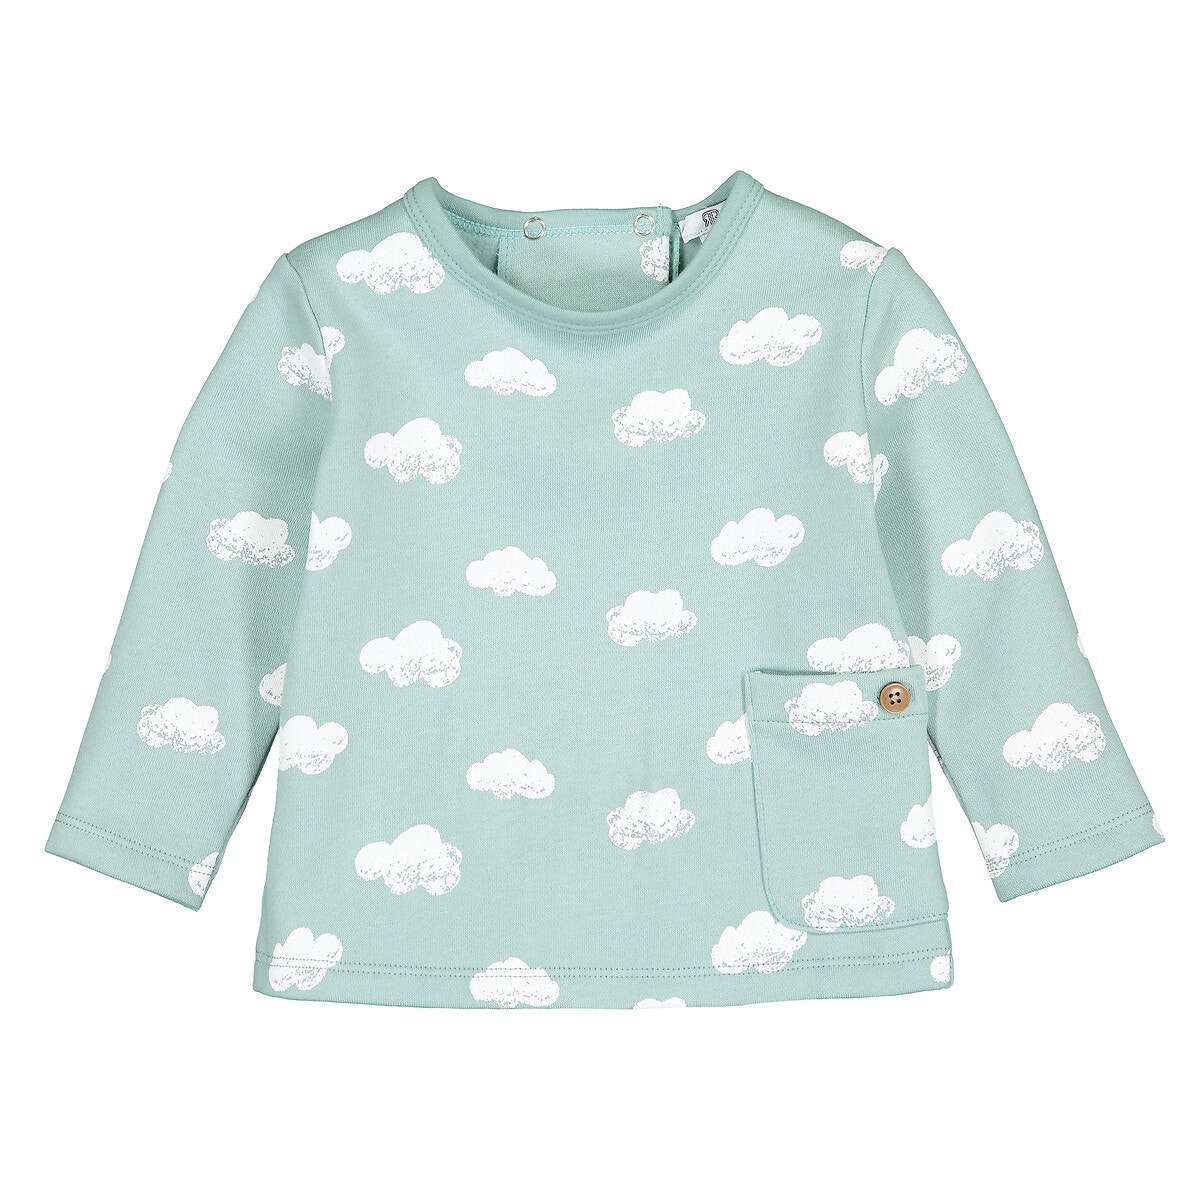 ΠΑΙΔΙ | Βρεφικά | Μπλούζες & Πουκάμισα | Φούτερ Φούτερ από φανέλα με μοτίβο σύννεφα, 0 - 2 ετών